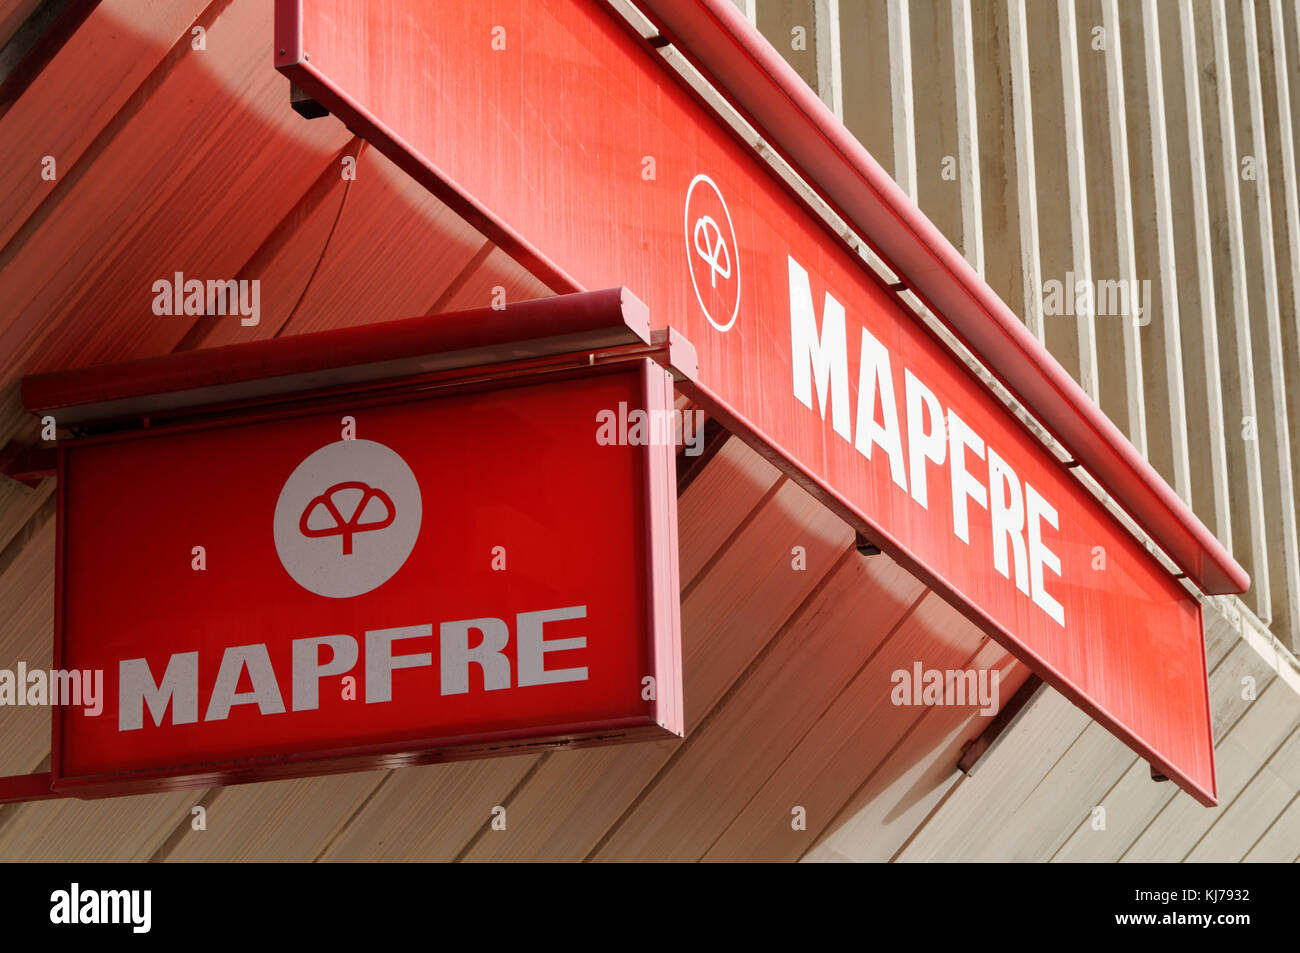 Mapfre Spanish insurance company Stock Photo